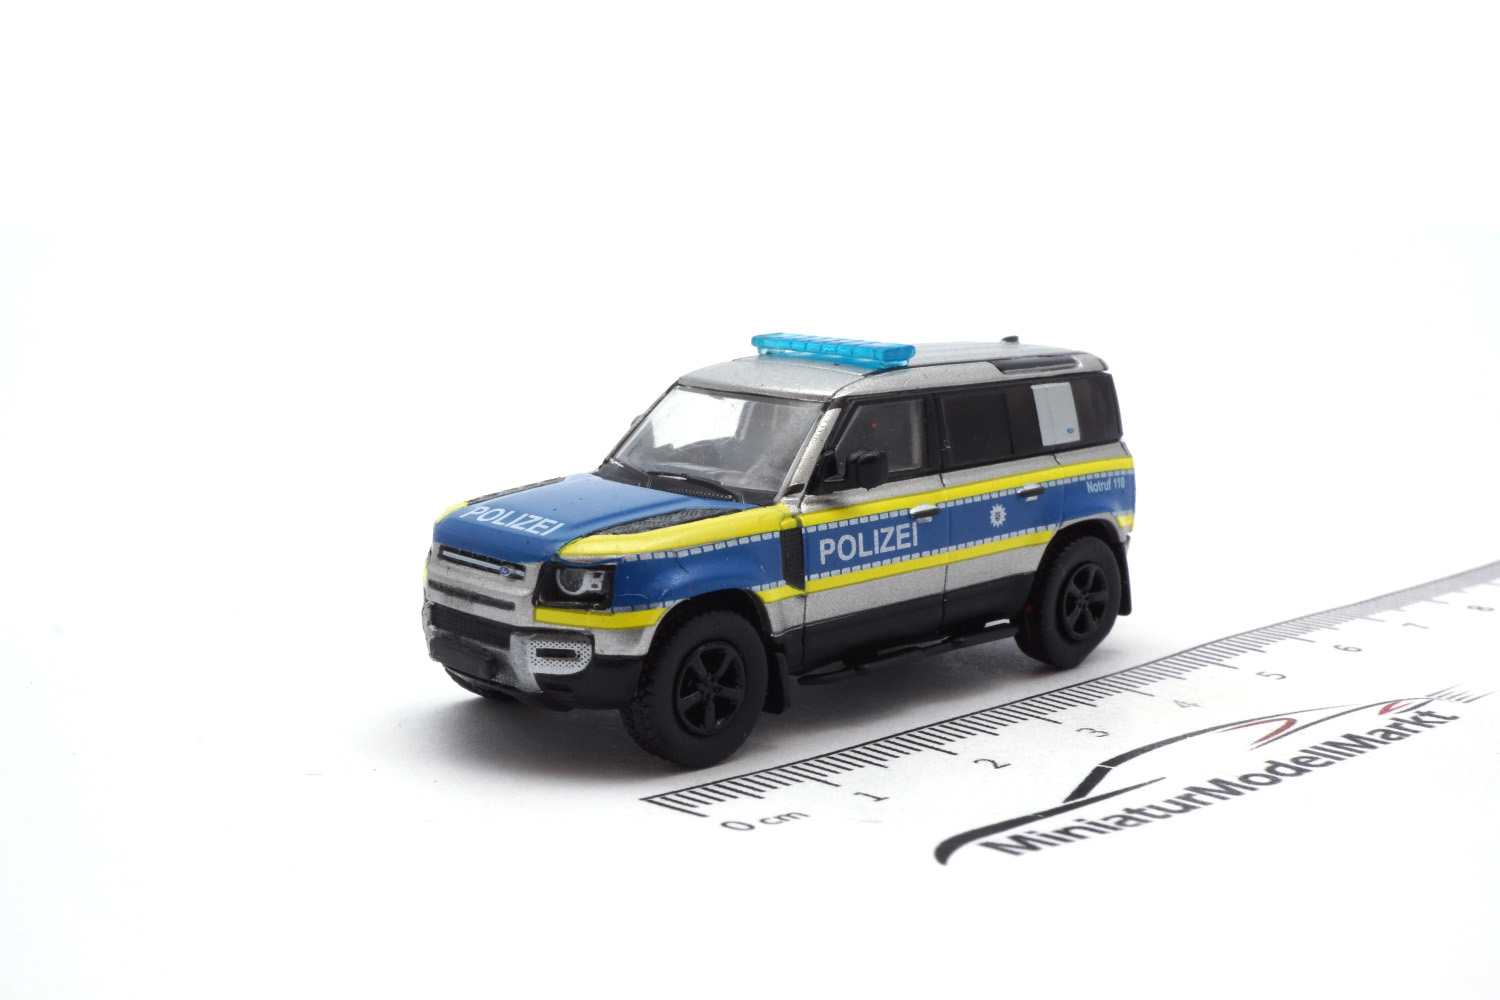 PCX87 PCX870619 Land Rover Defender 110, Polizei Hessen, 2020 1:87